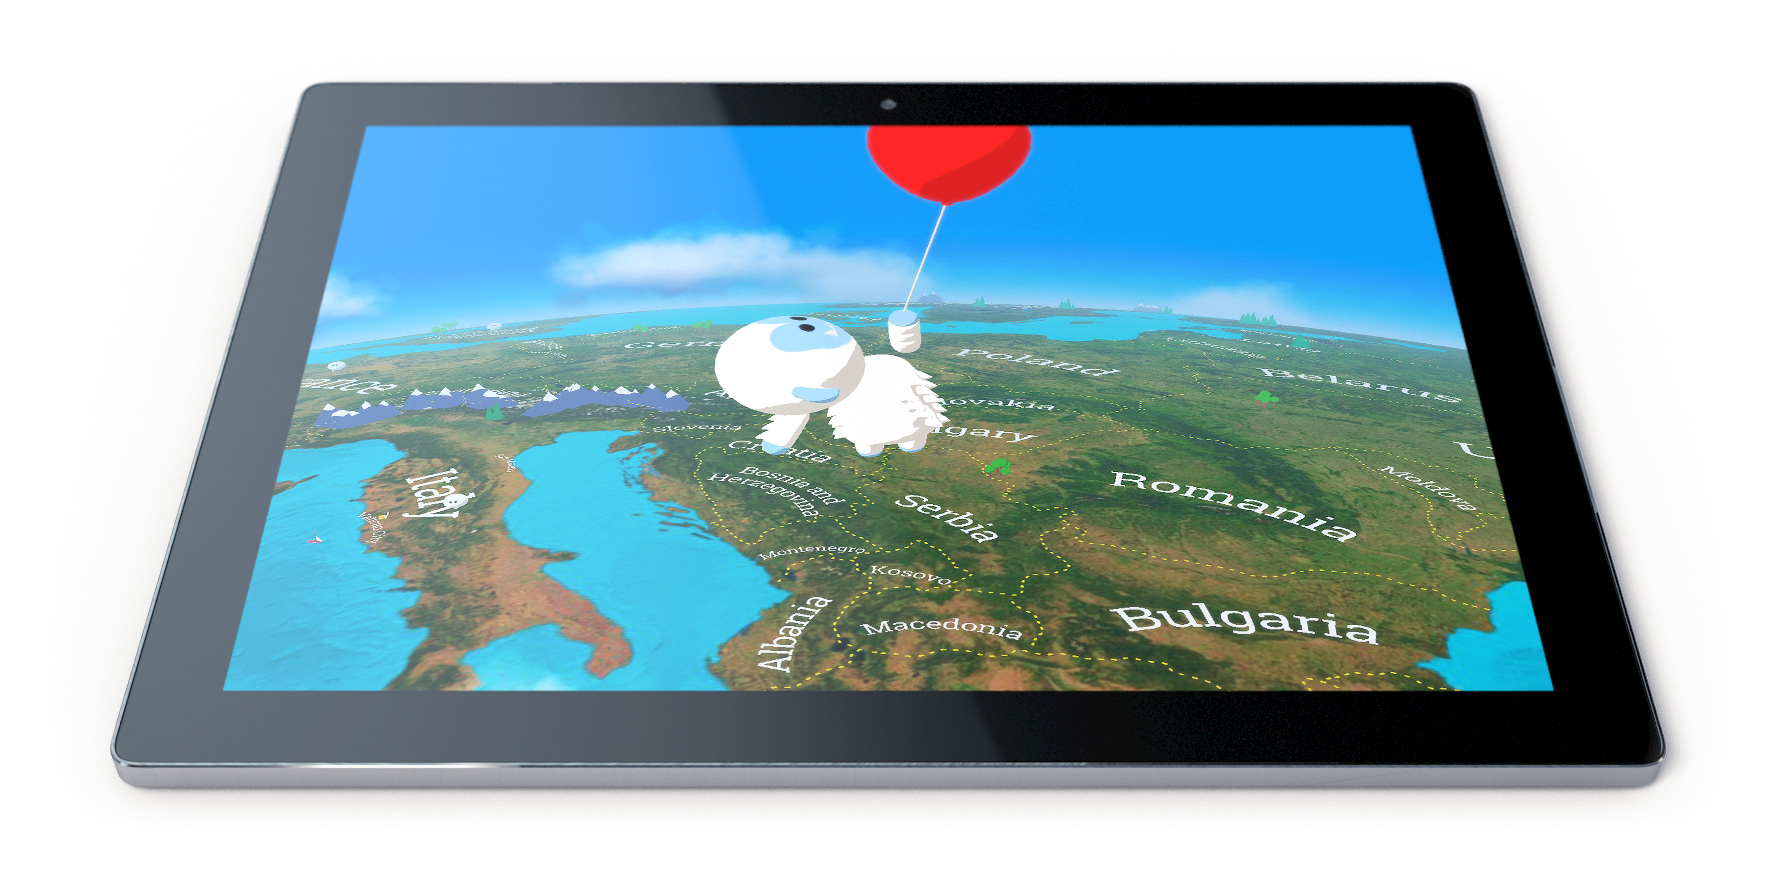 تطبيق Verne لإستكشاف جبال الهيمالايا بميزة الـ 3D وبواسطة خرائط قوقل